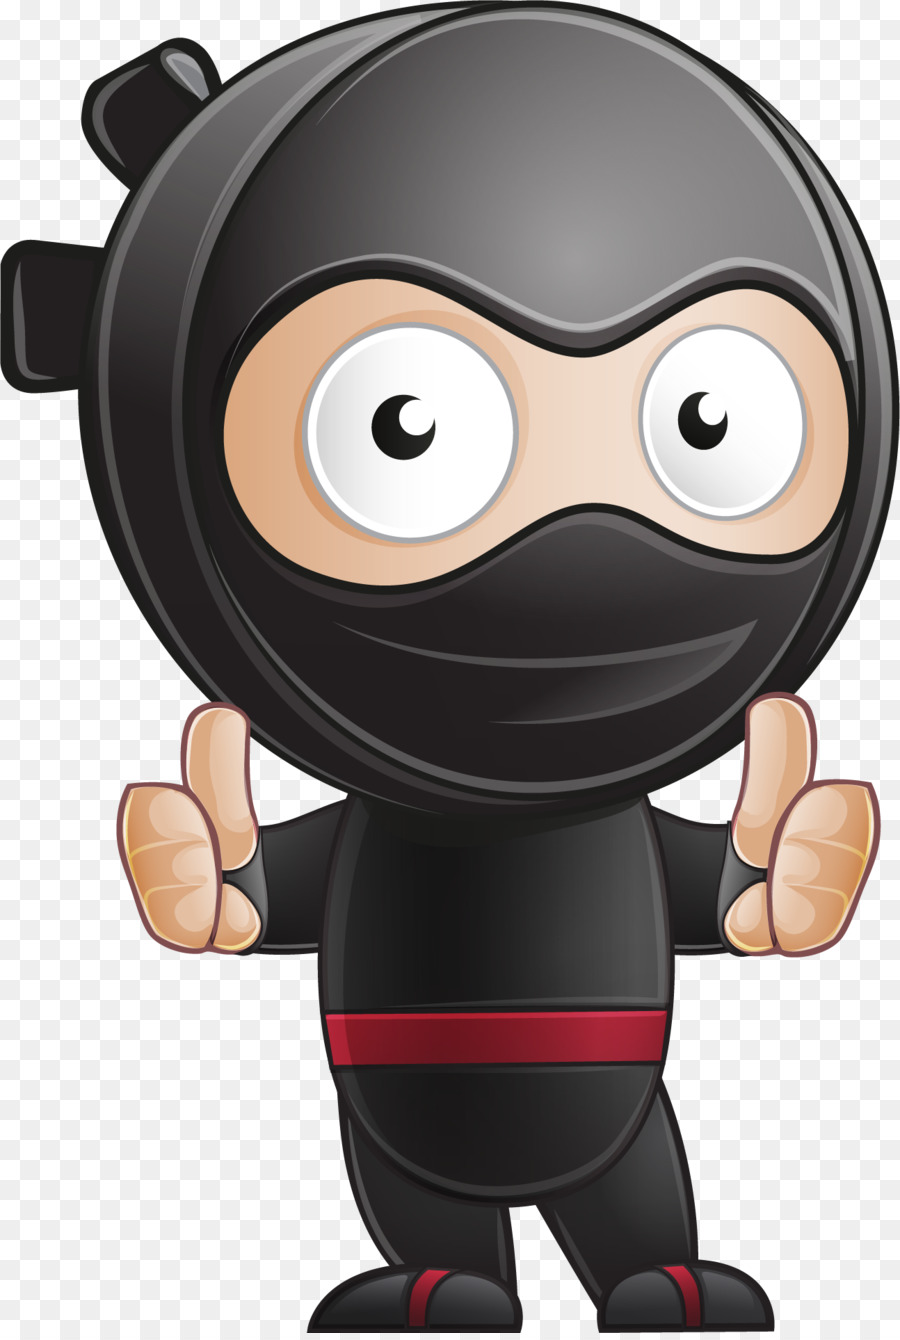 Ninja Cartoon png download - 957*1060 - Free Transparent Ninja png